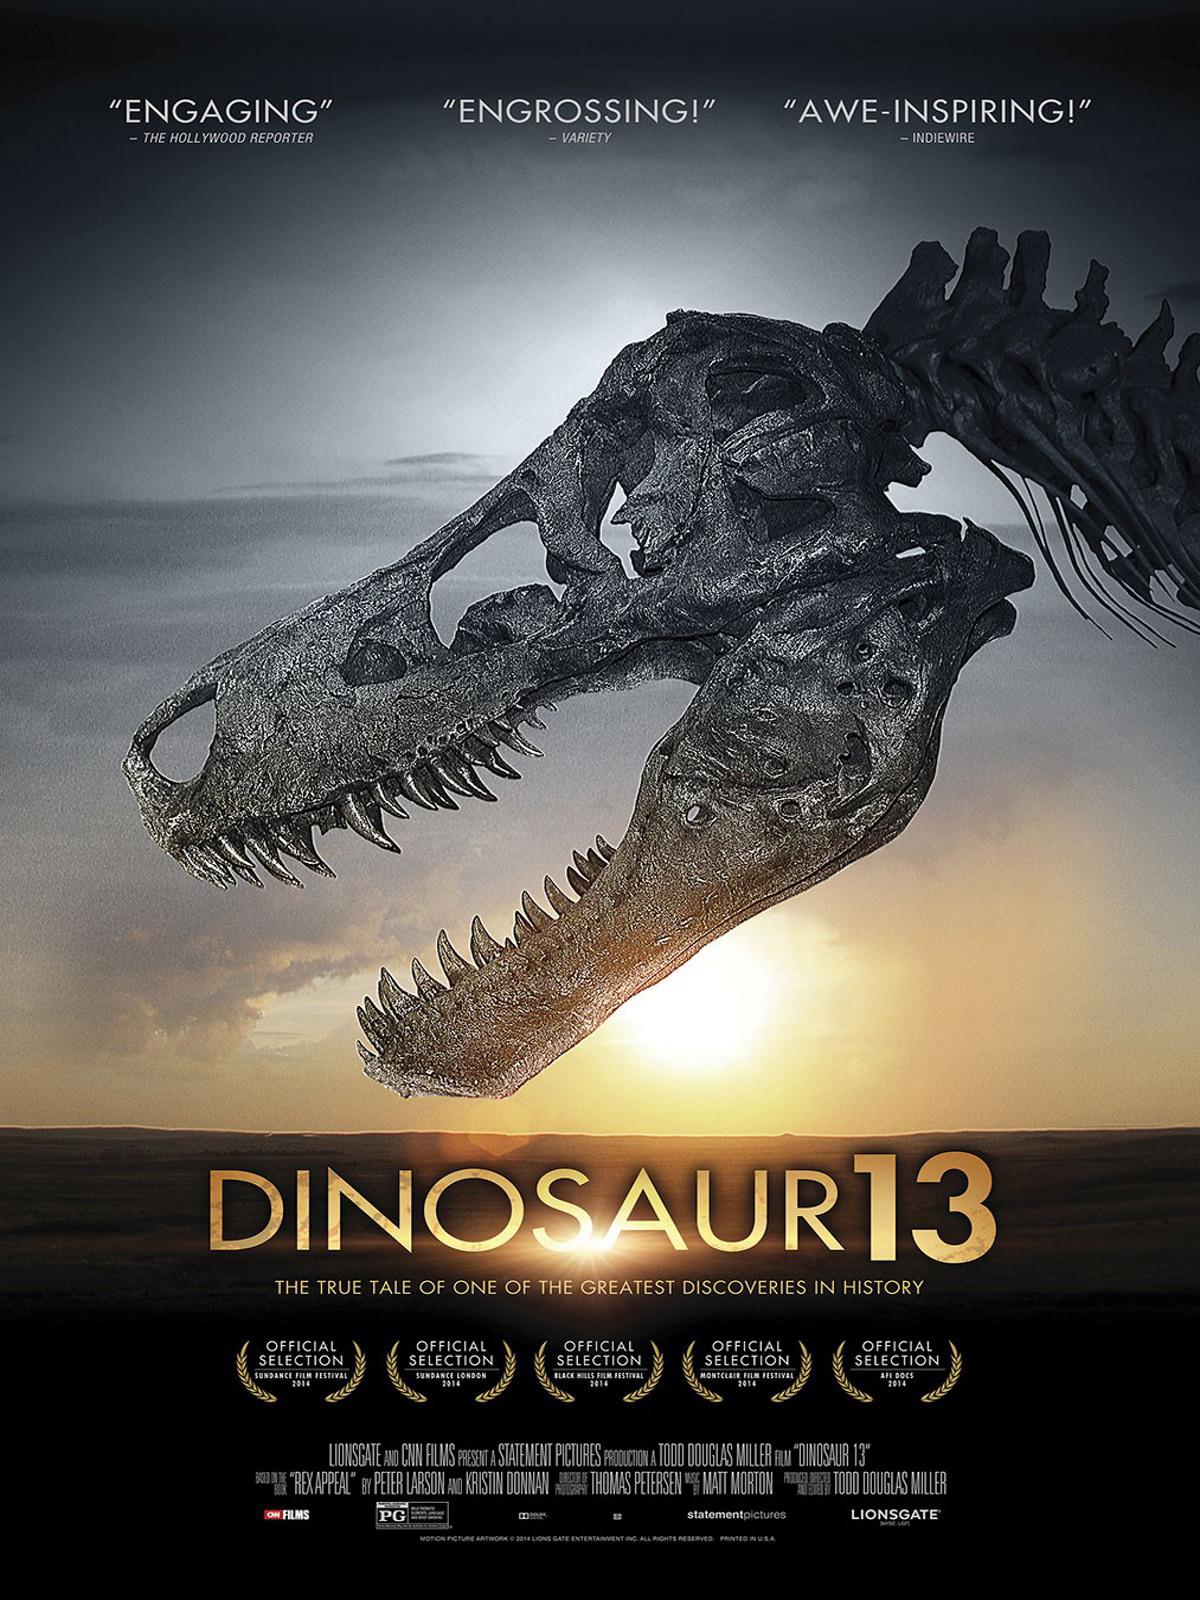 Dinosaur 13 Movie Review